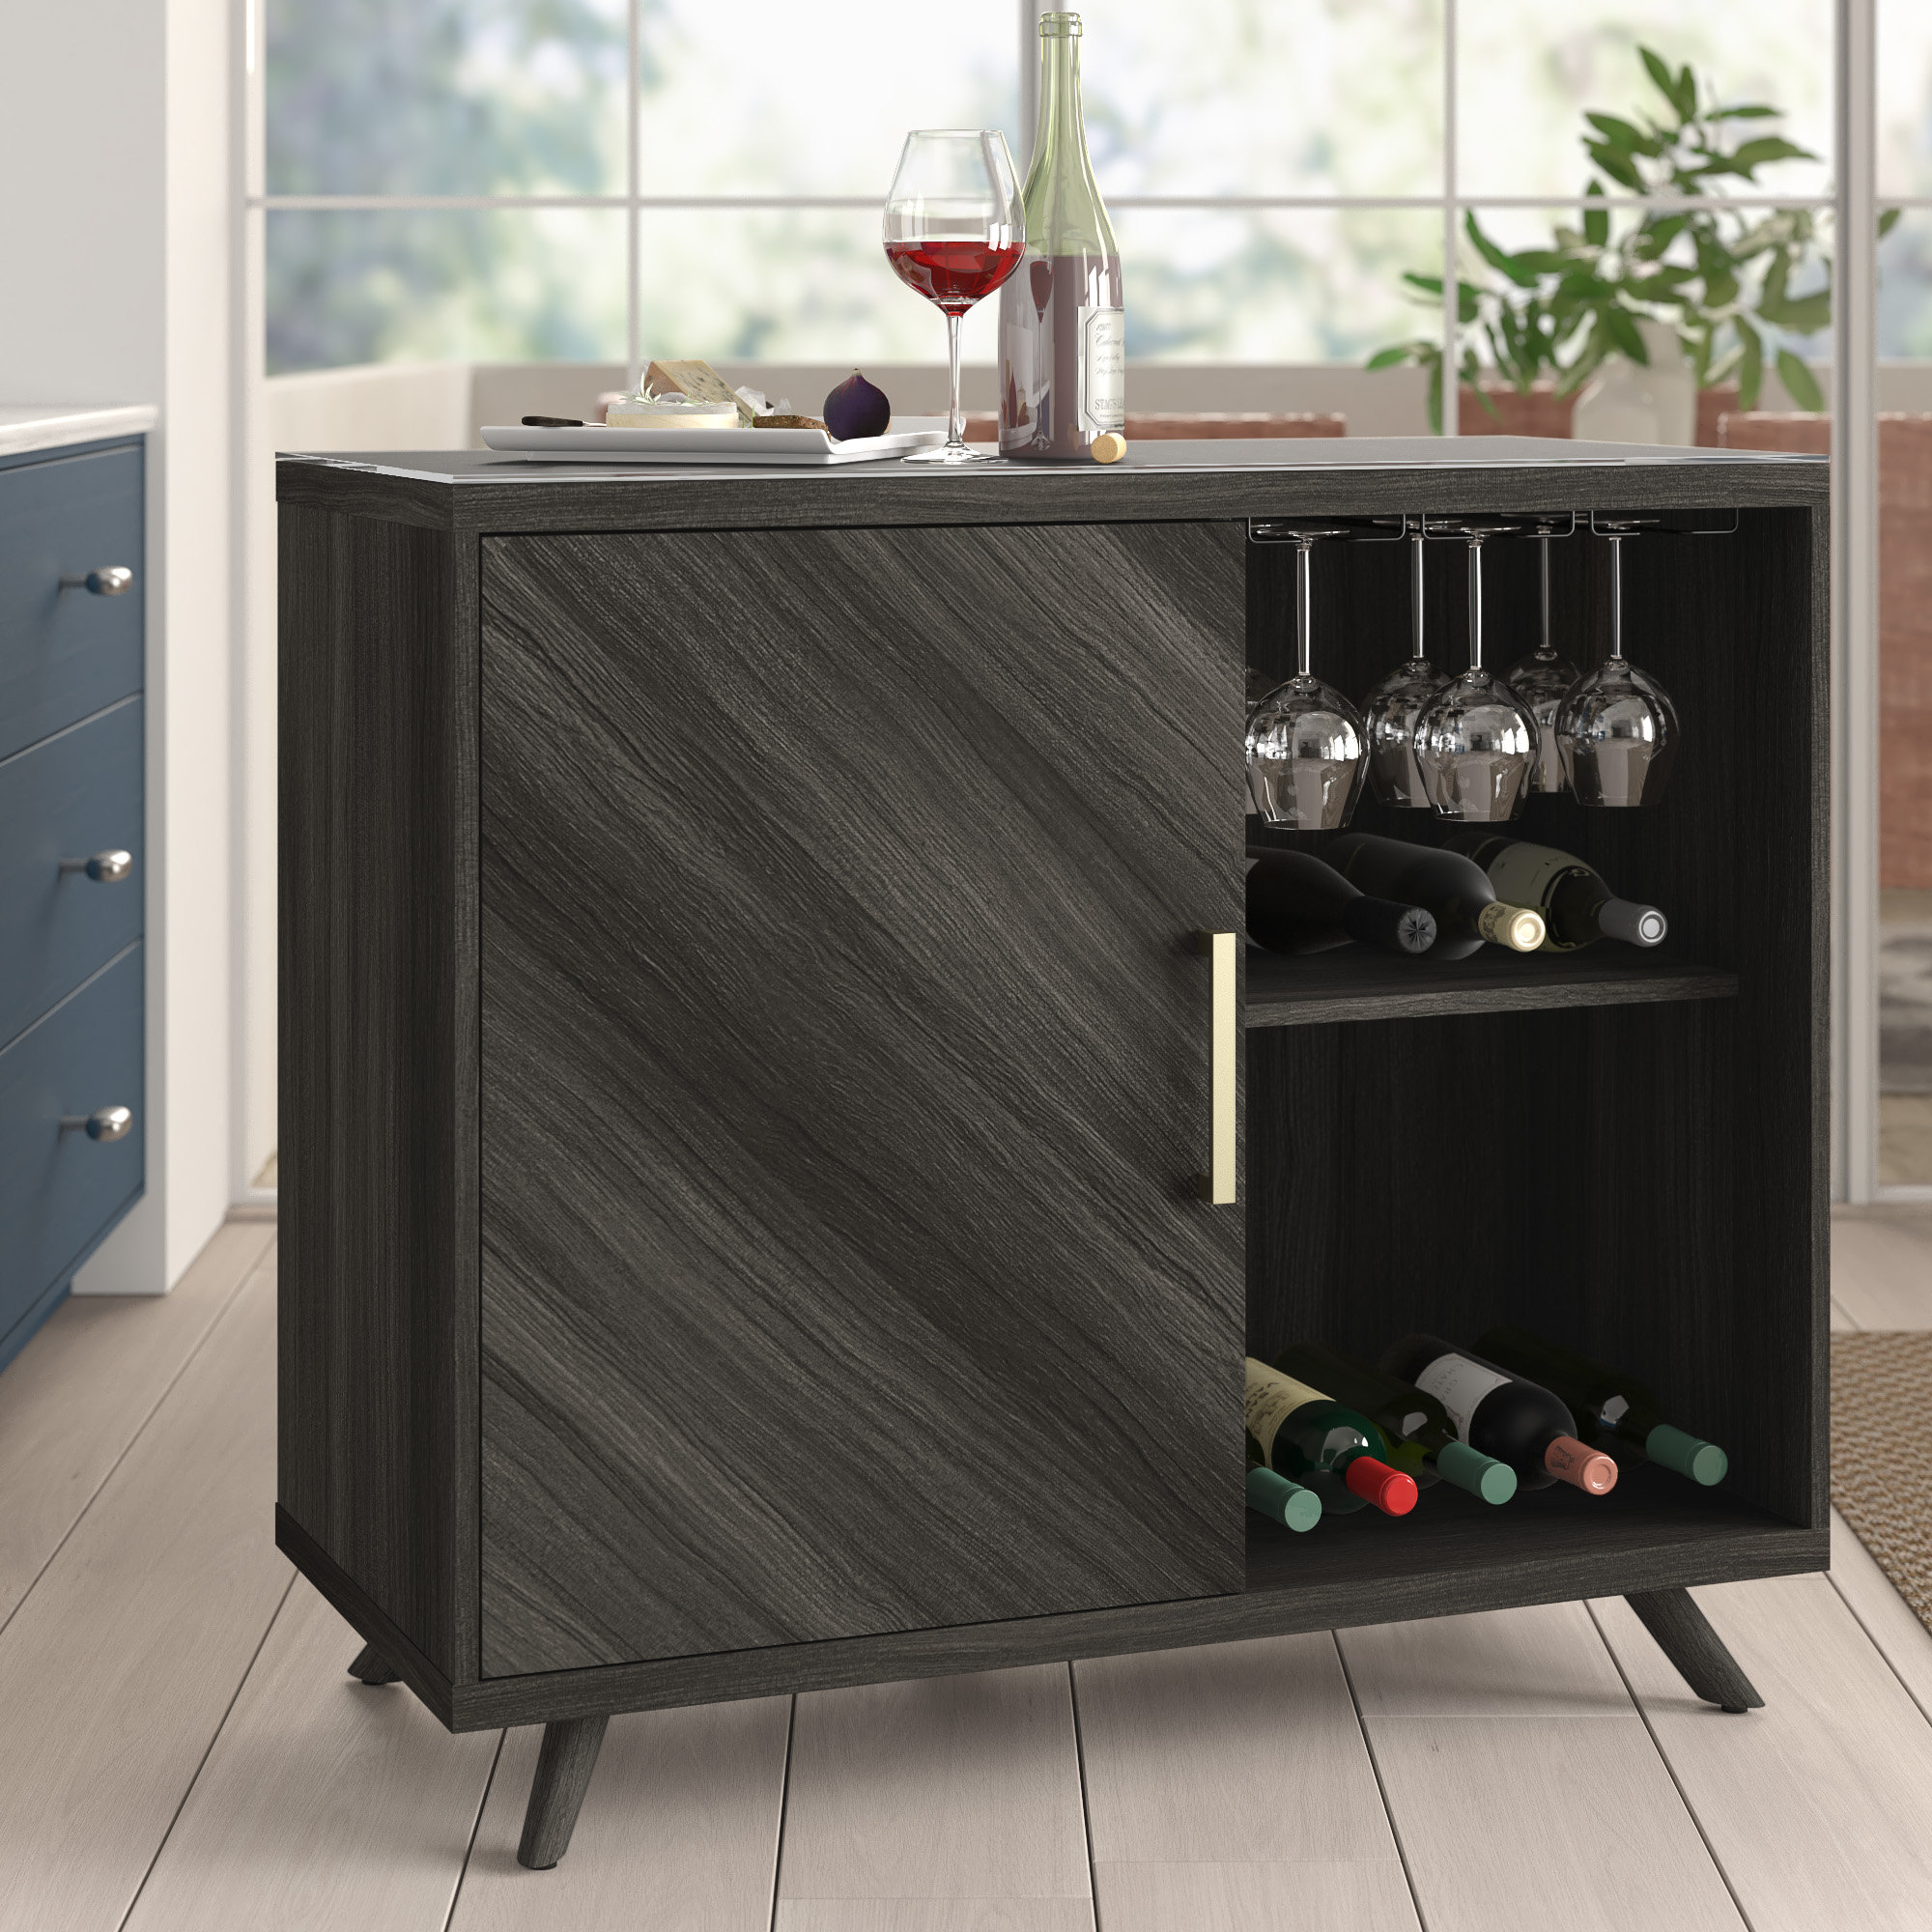 https://assets.wfcdn.com/im/41909288/compr-r85/2048/204819046/geneal-general-modern-bar-cabinet-with-refrigerated-beverage-cooler.jpg